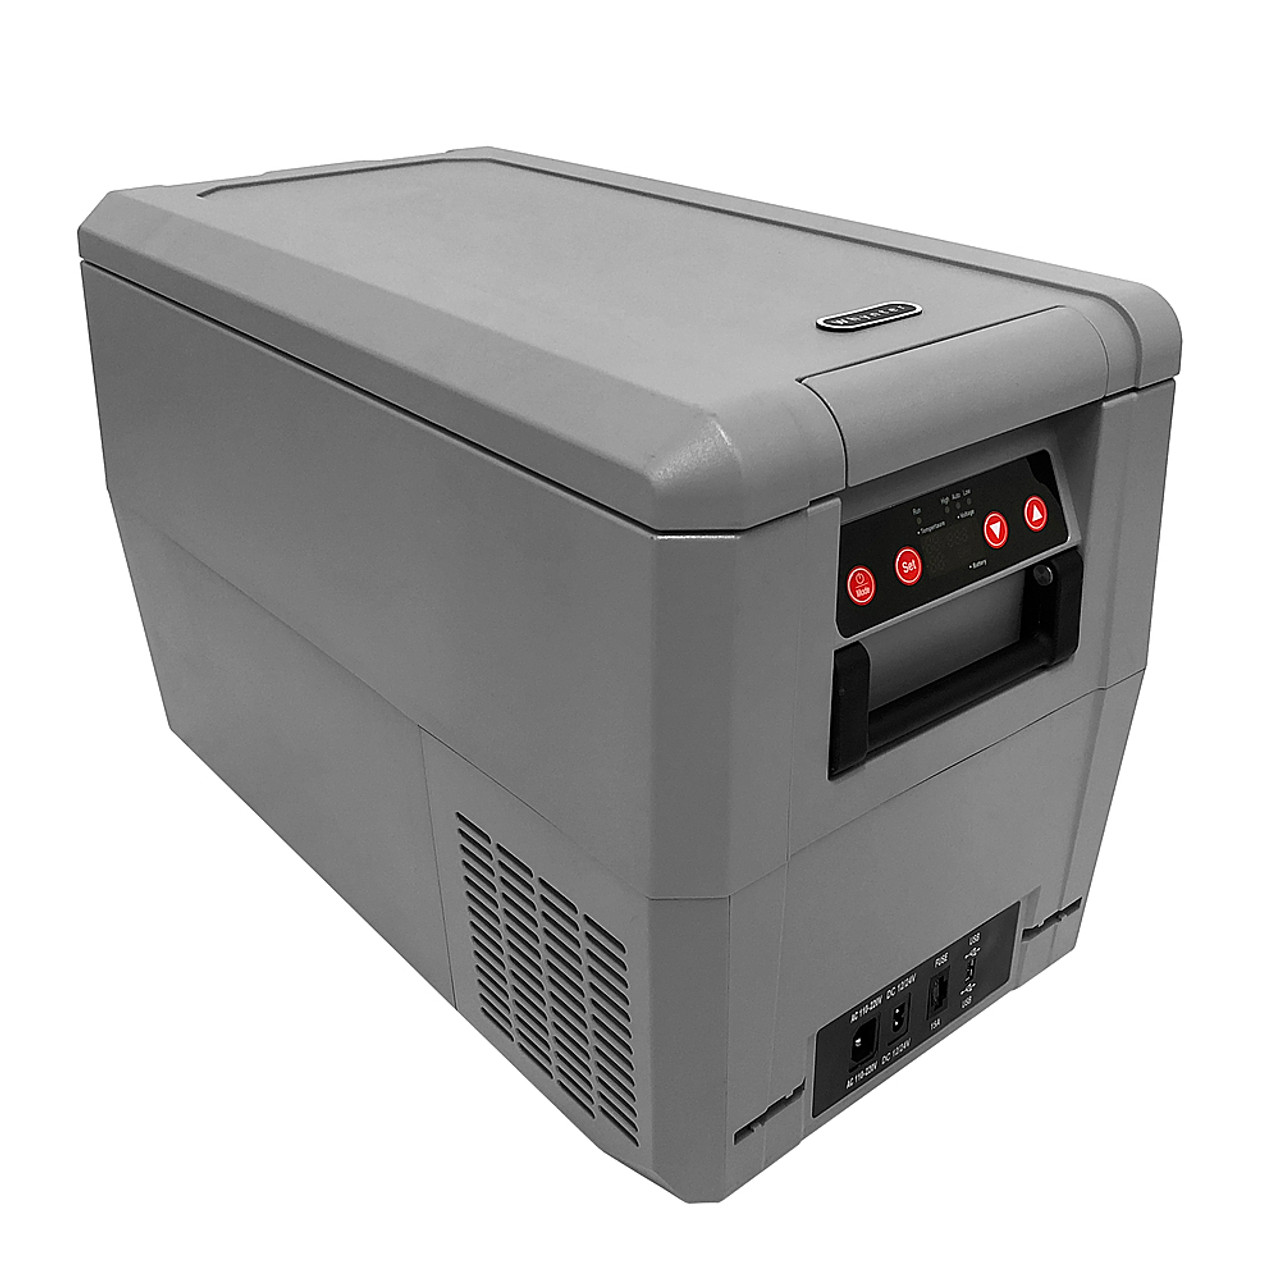 Whynter 34 Quart Compact Portable Freezer Refrigerator with 12v DC Option